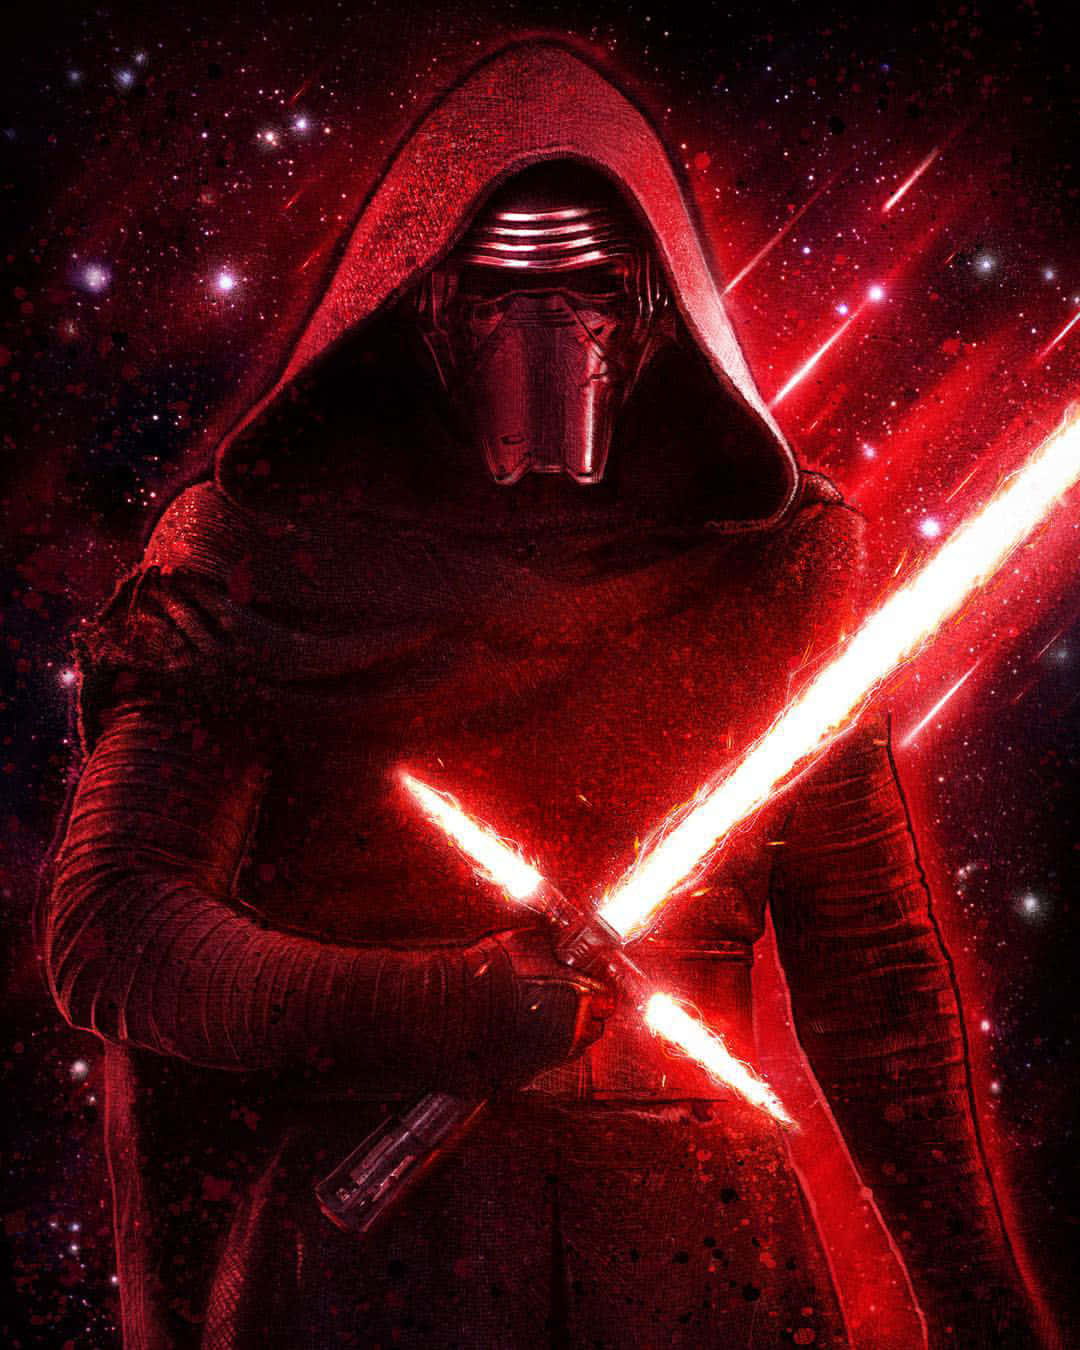 Profilenpå Rey, Den Mäktiga Jediriddaren I Star Wars